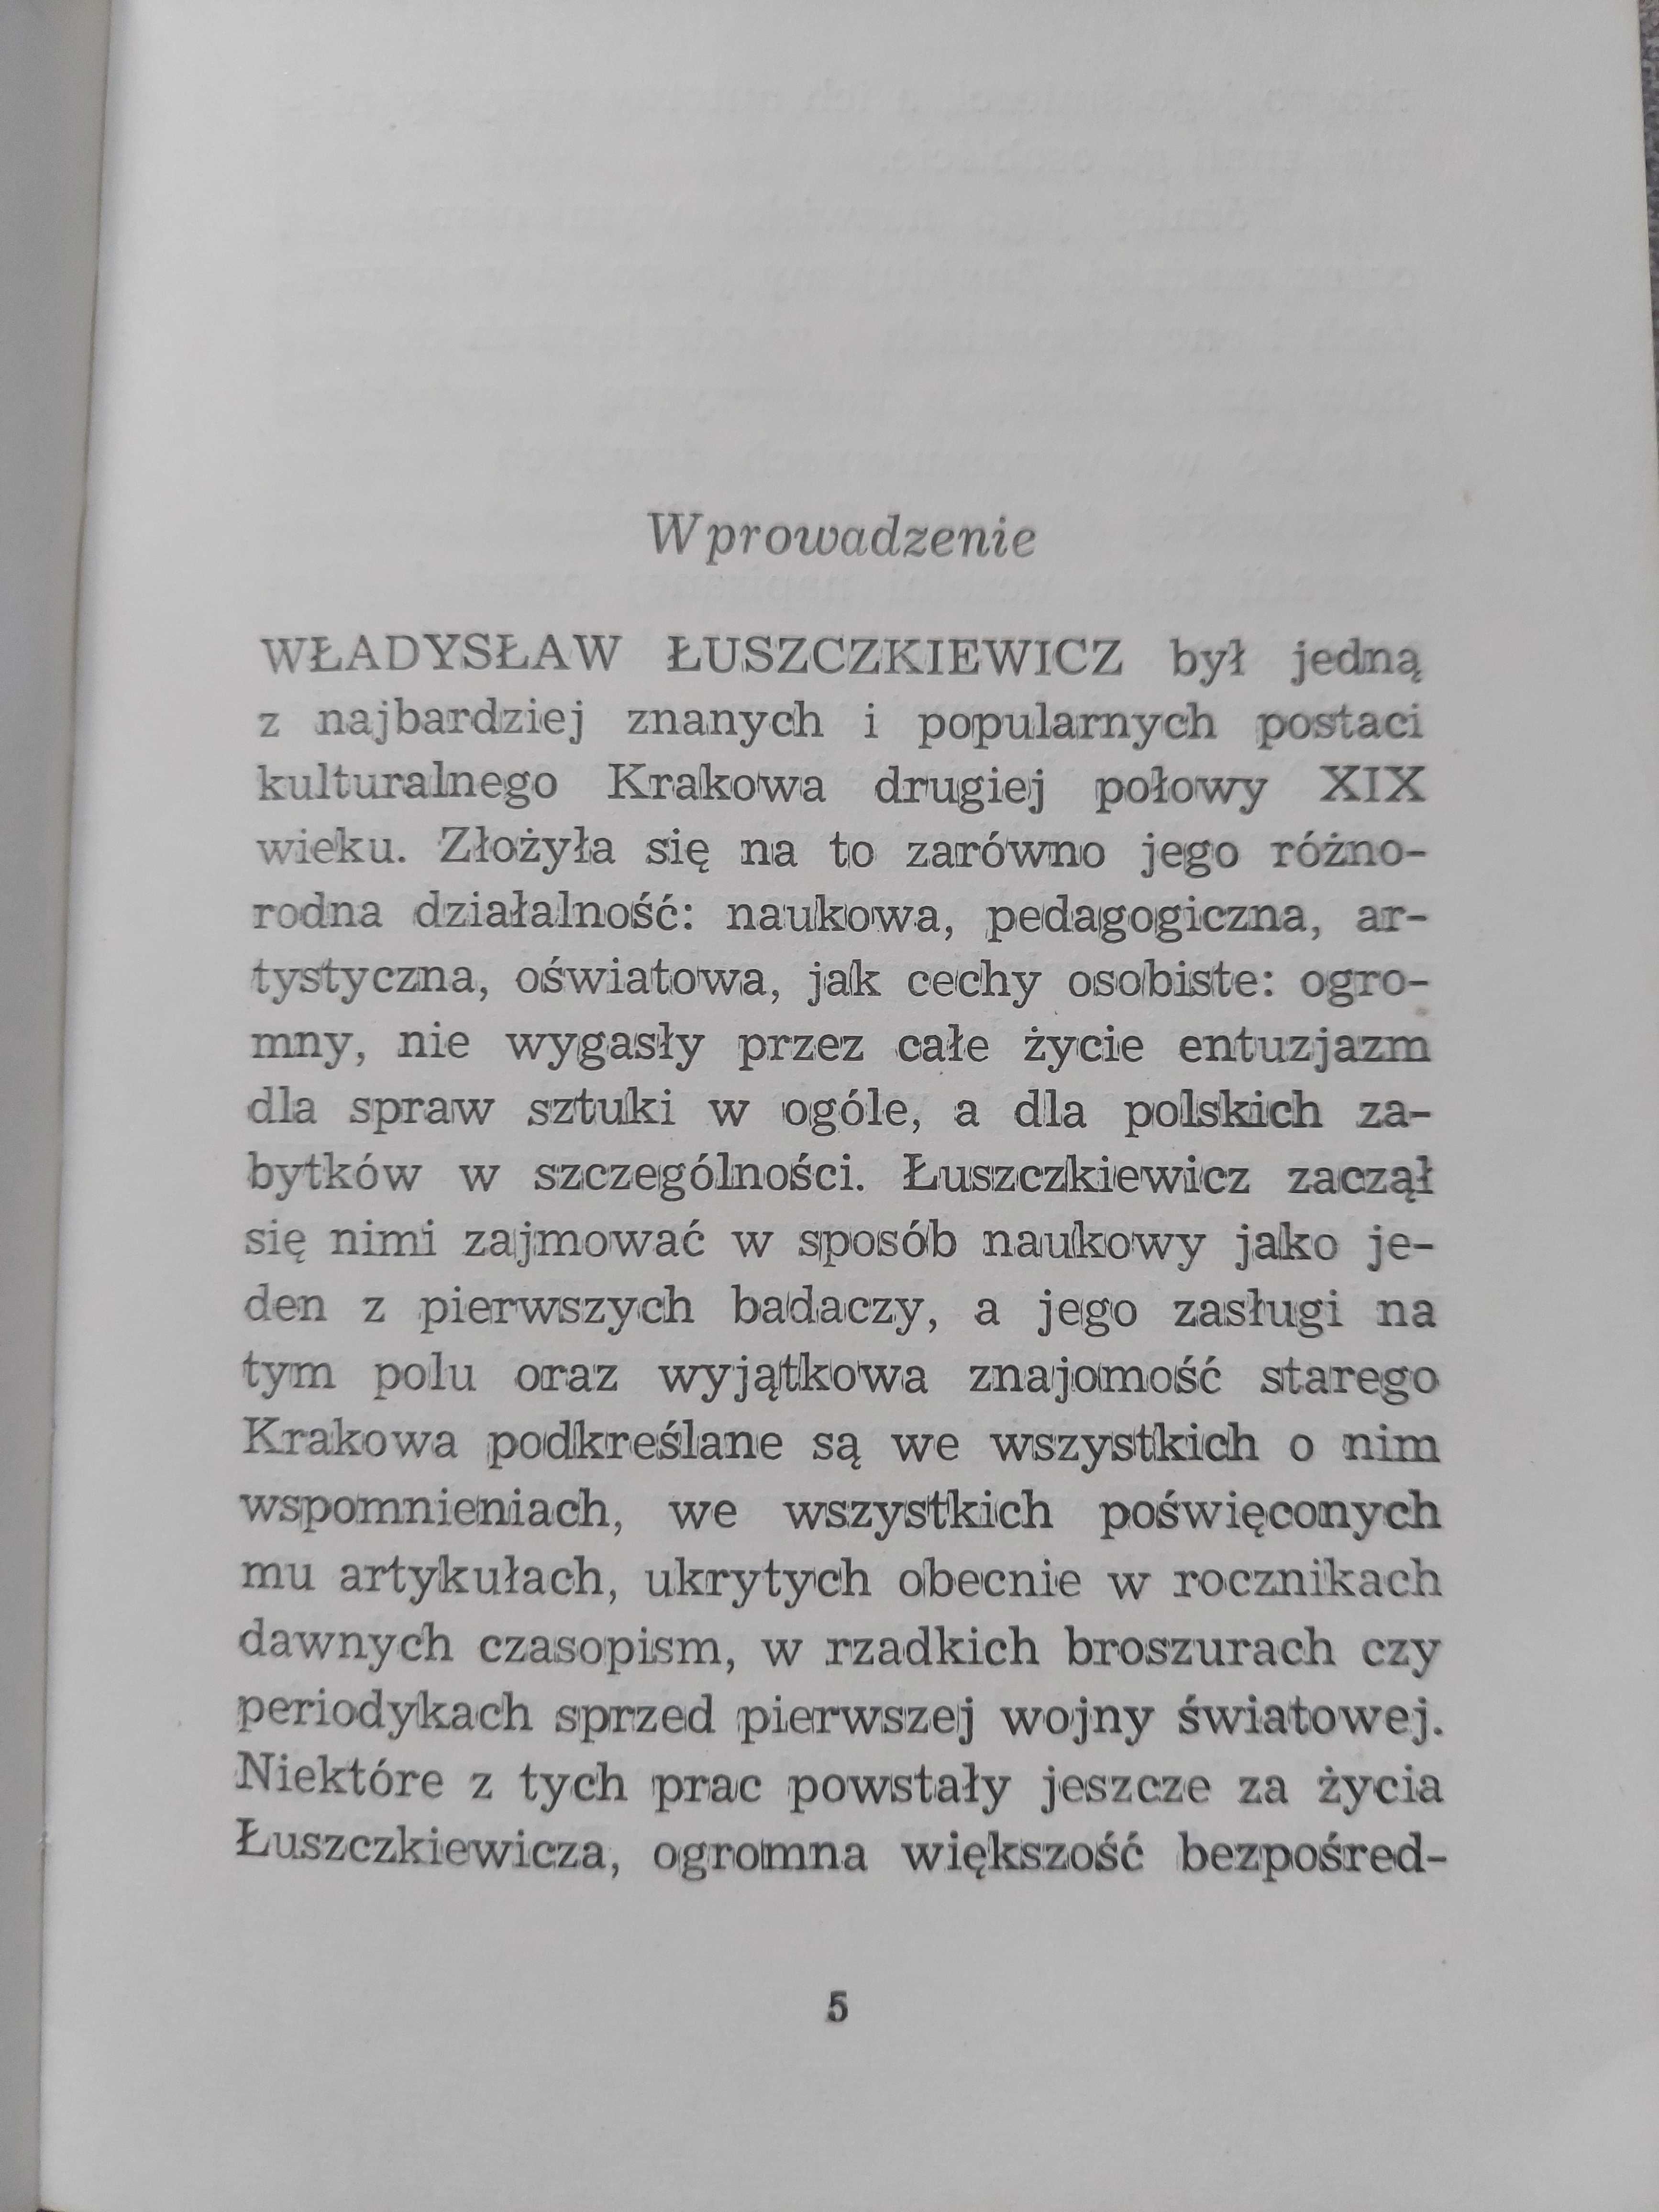 Władysław Łuszczakiewicz malarz i pedagog